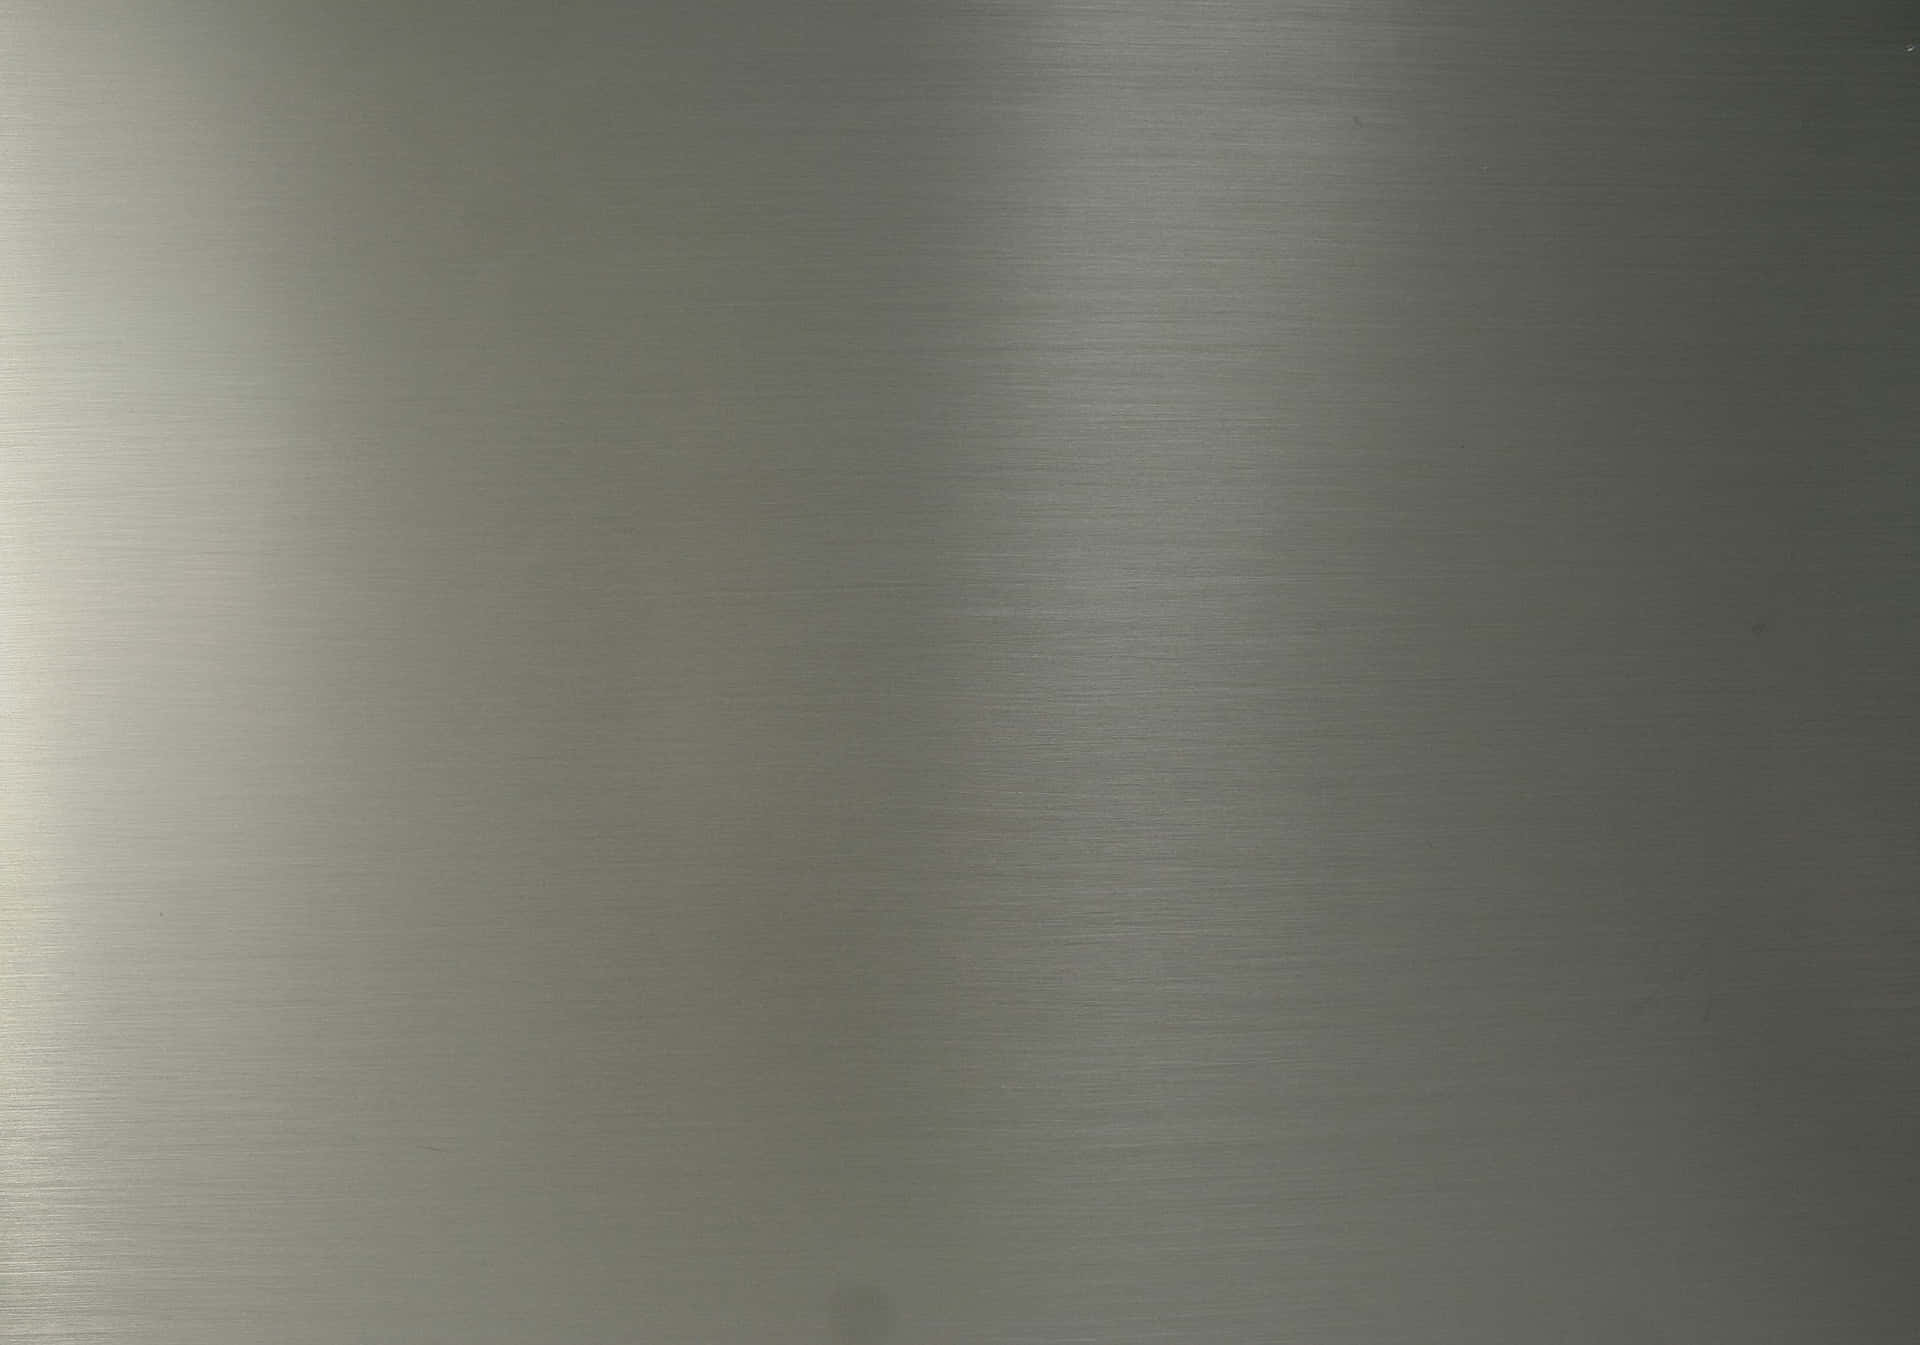 Ennärbild Av En Silvermetallplatta (in Context Of Computer/mobile Wallpaper).